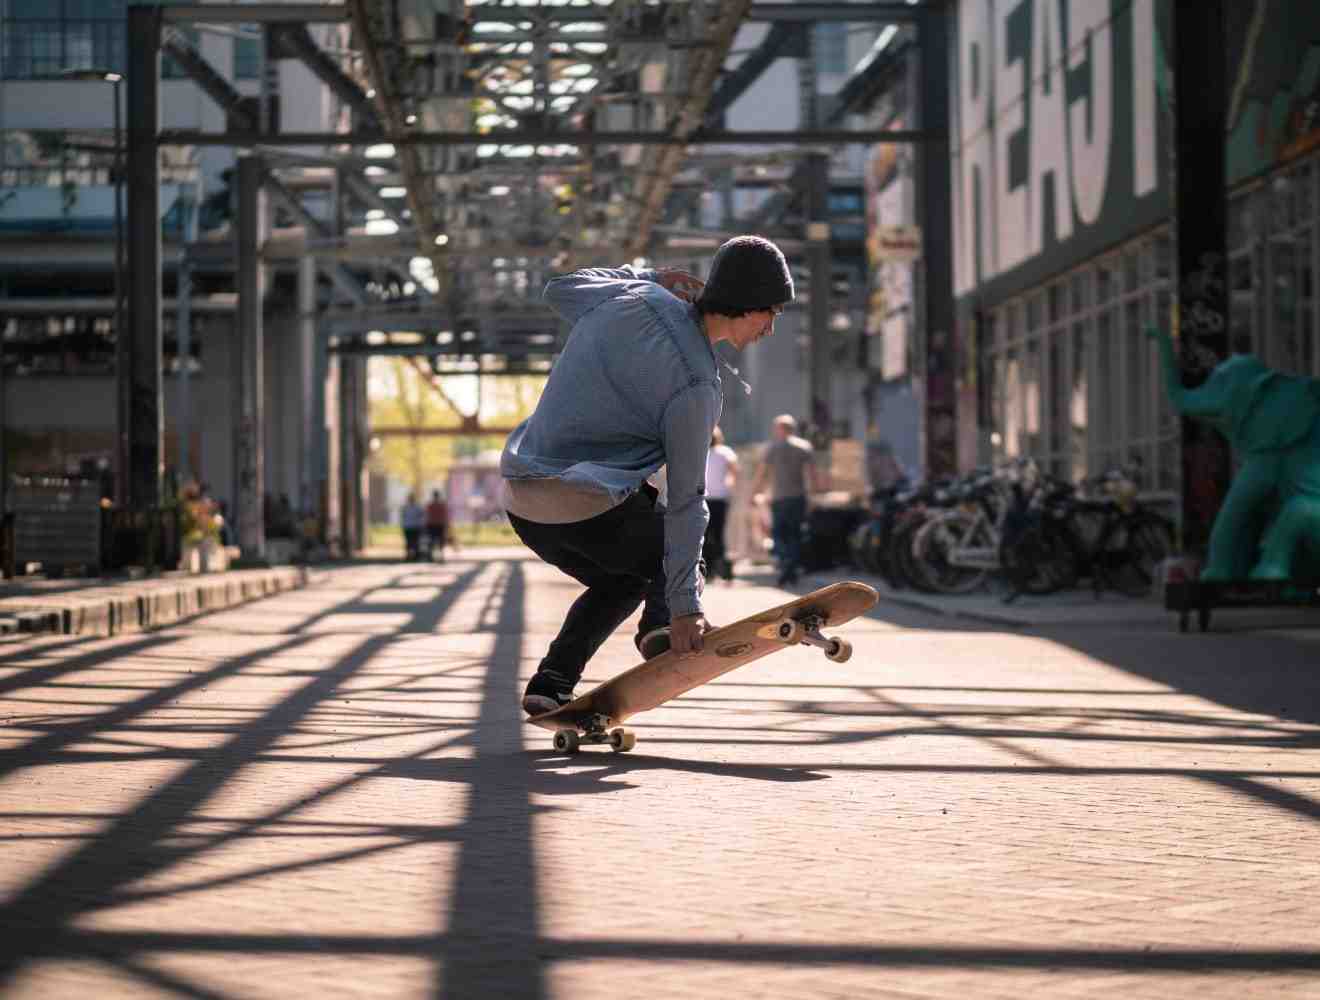 Où sont fabriqués les planches de skate ?